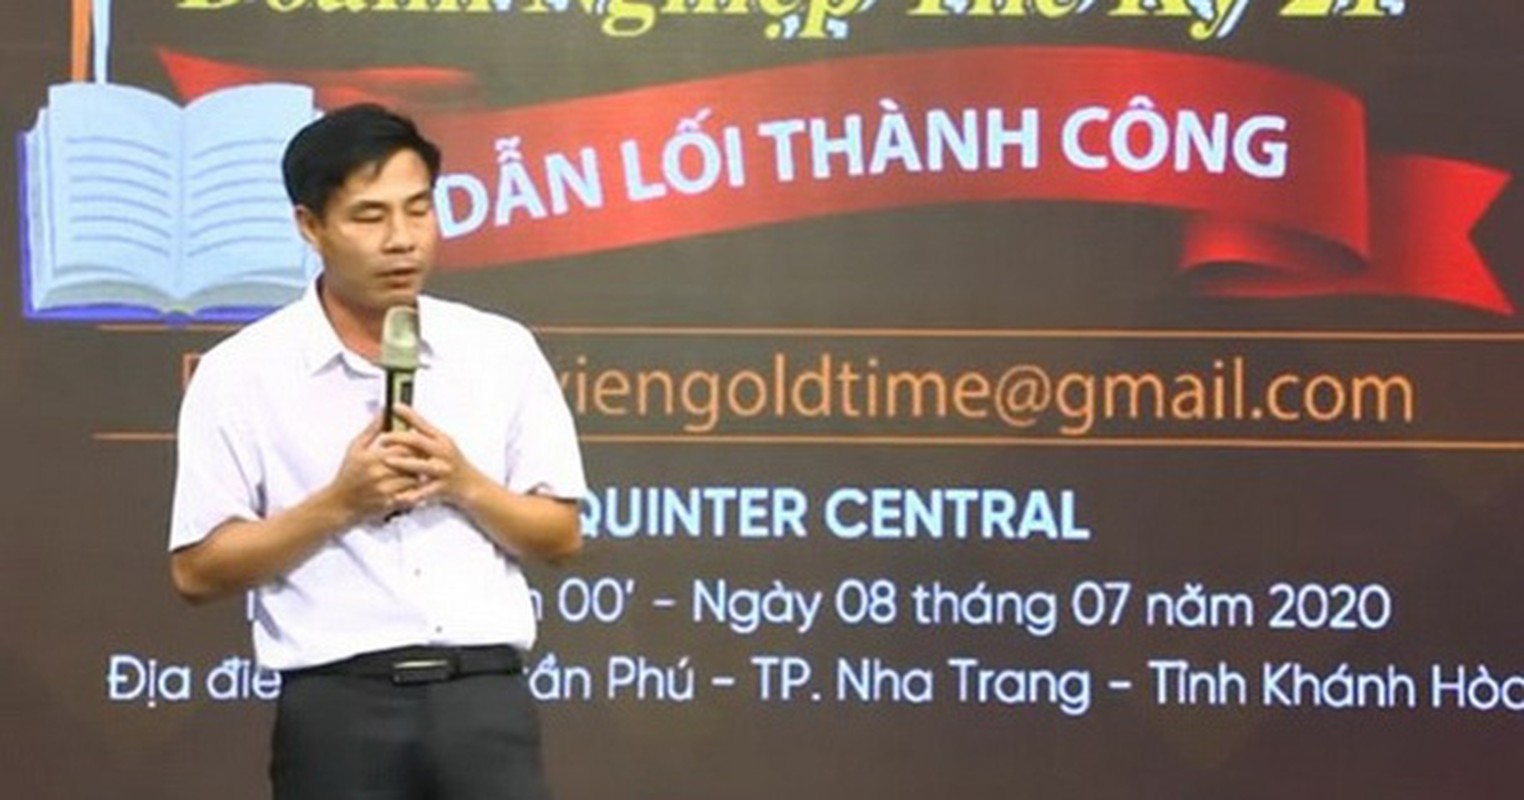 Chieu lua dao cua “ong trum” duong day da cap Nguyen Khac Doi-Hinh-6